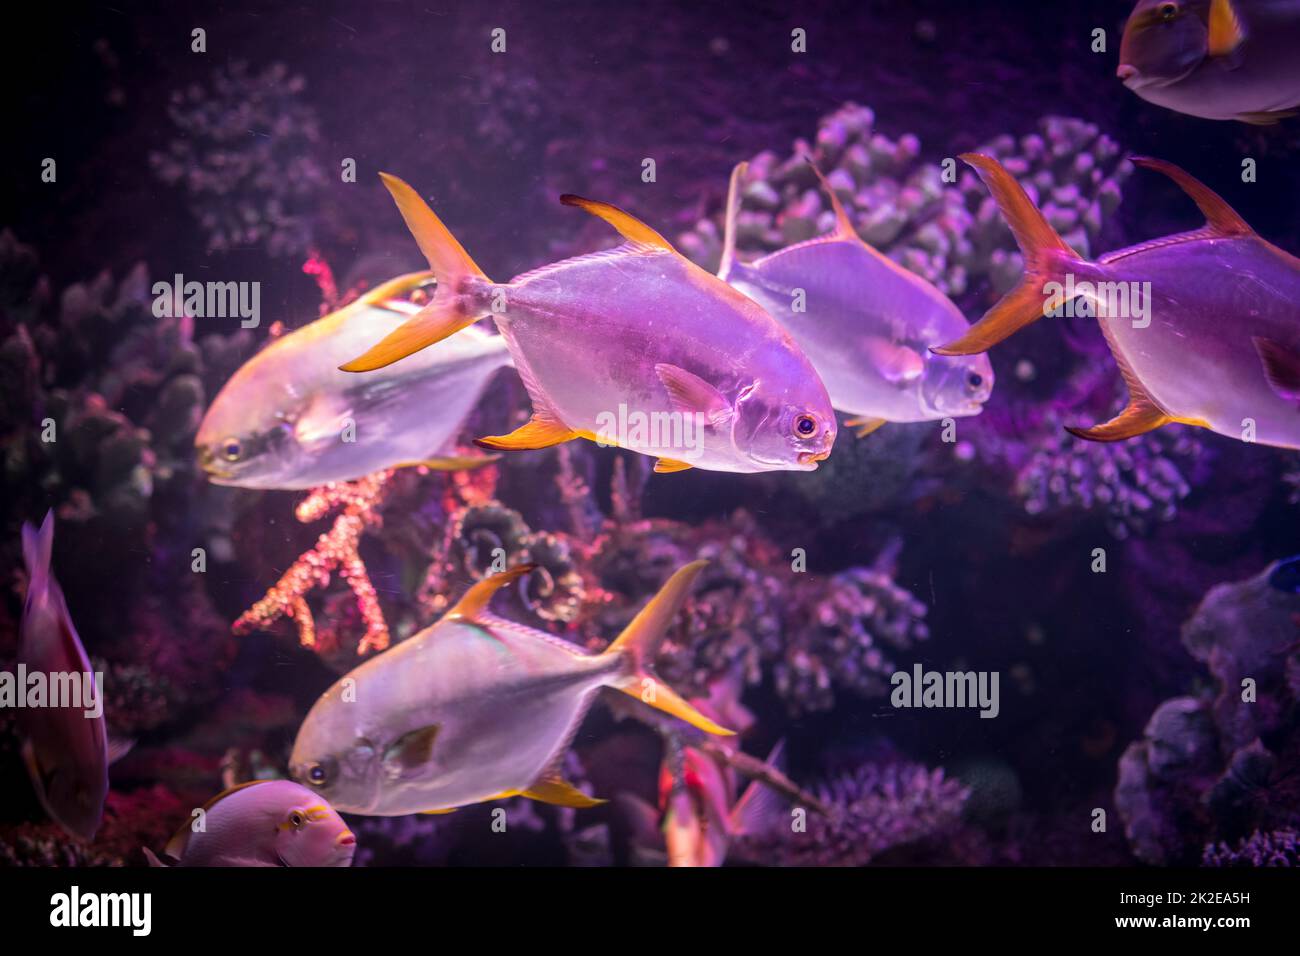 Piranha fish in an aquarium close up Stock Photo